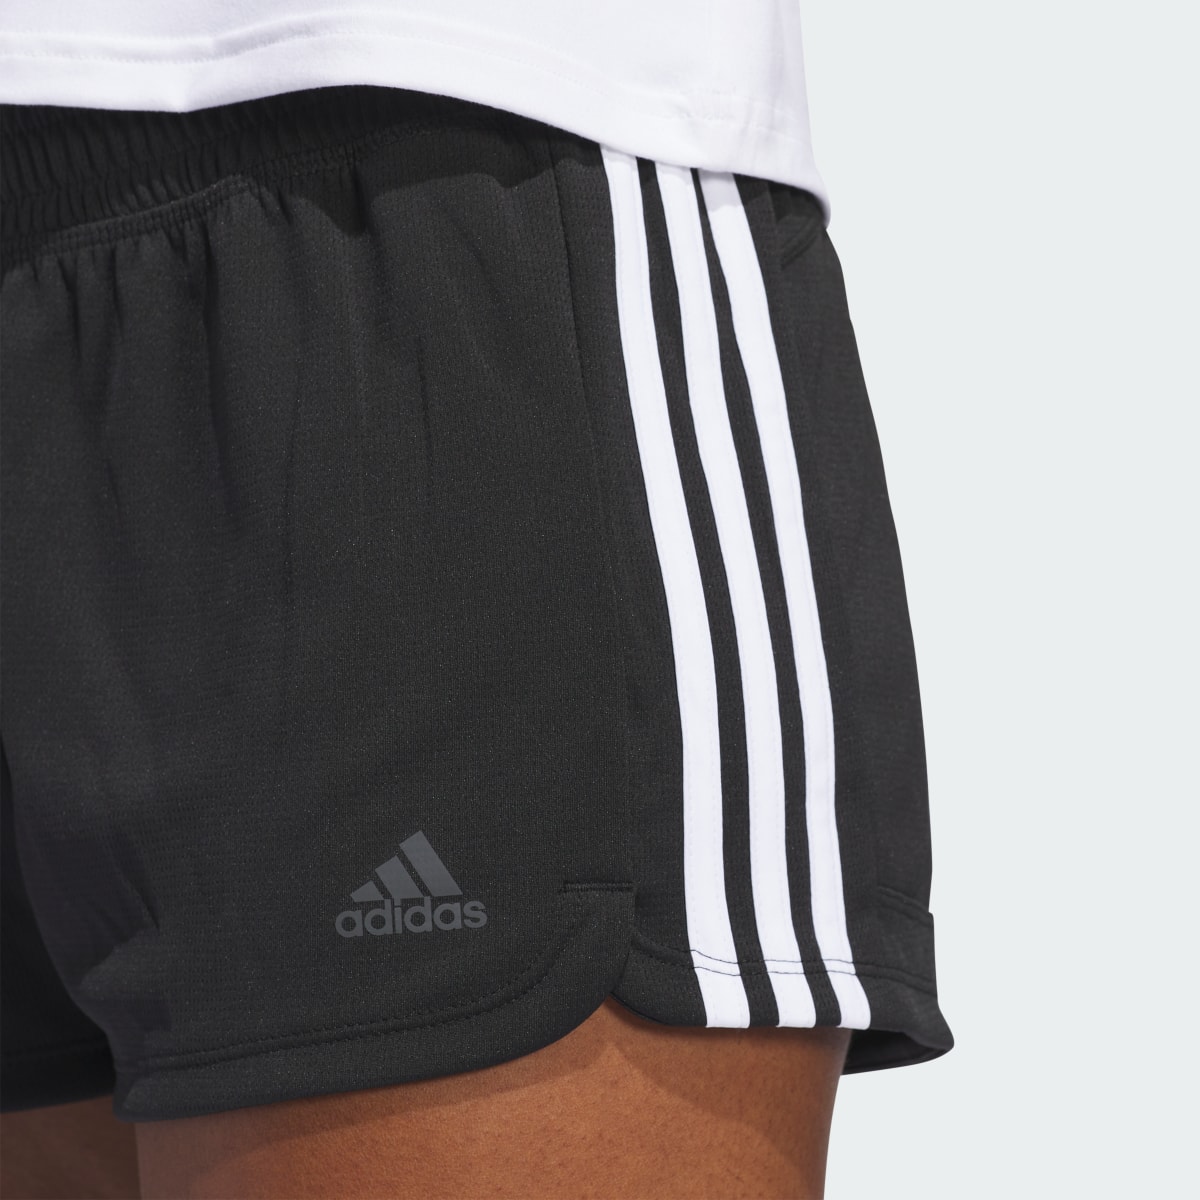 Adidas Pacer 3-Streifen Knit Shorts. 6